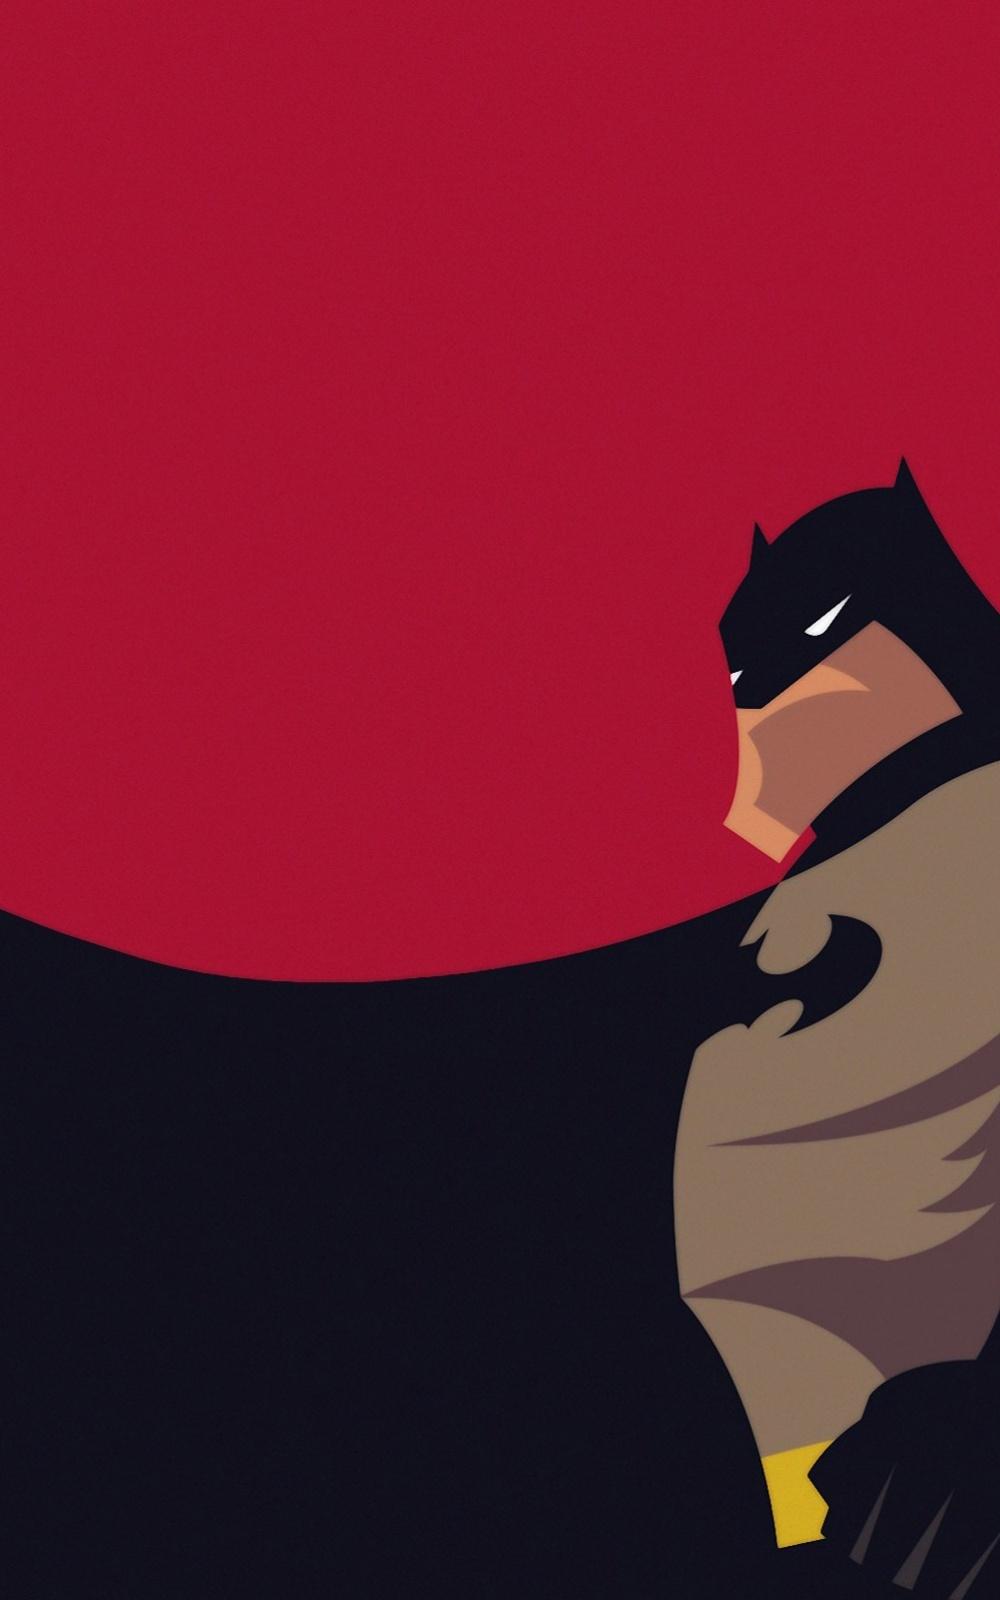 Minimalist Batman Android Wallpaper free download